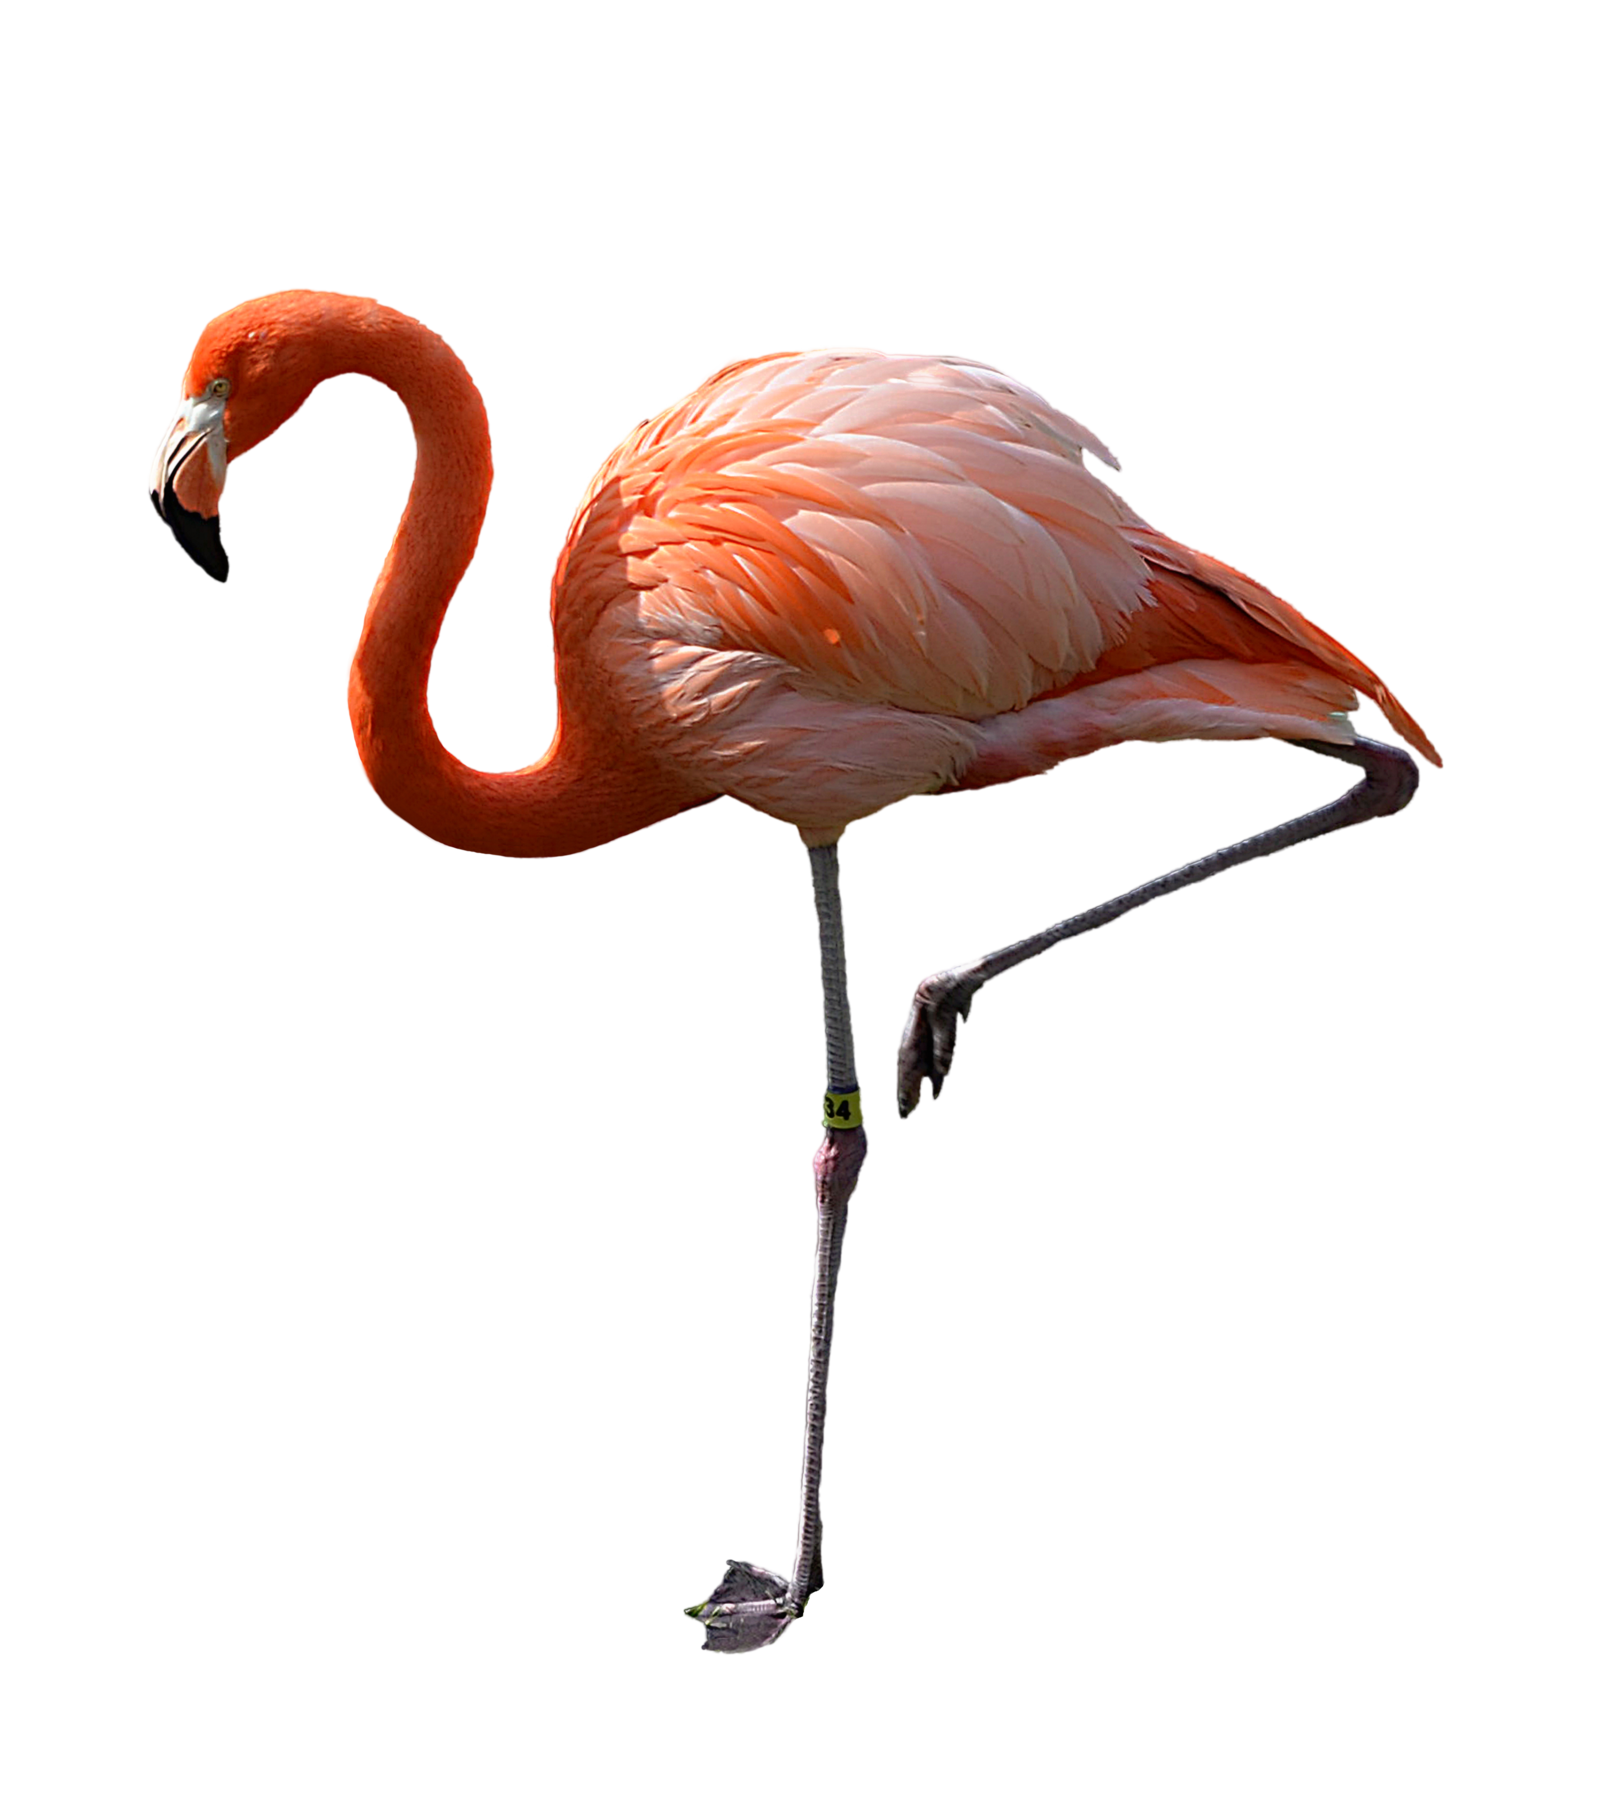 legs clipart flamingo